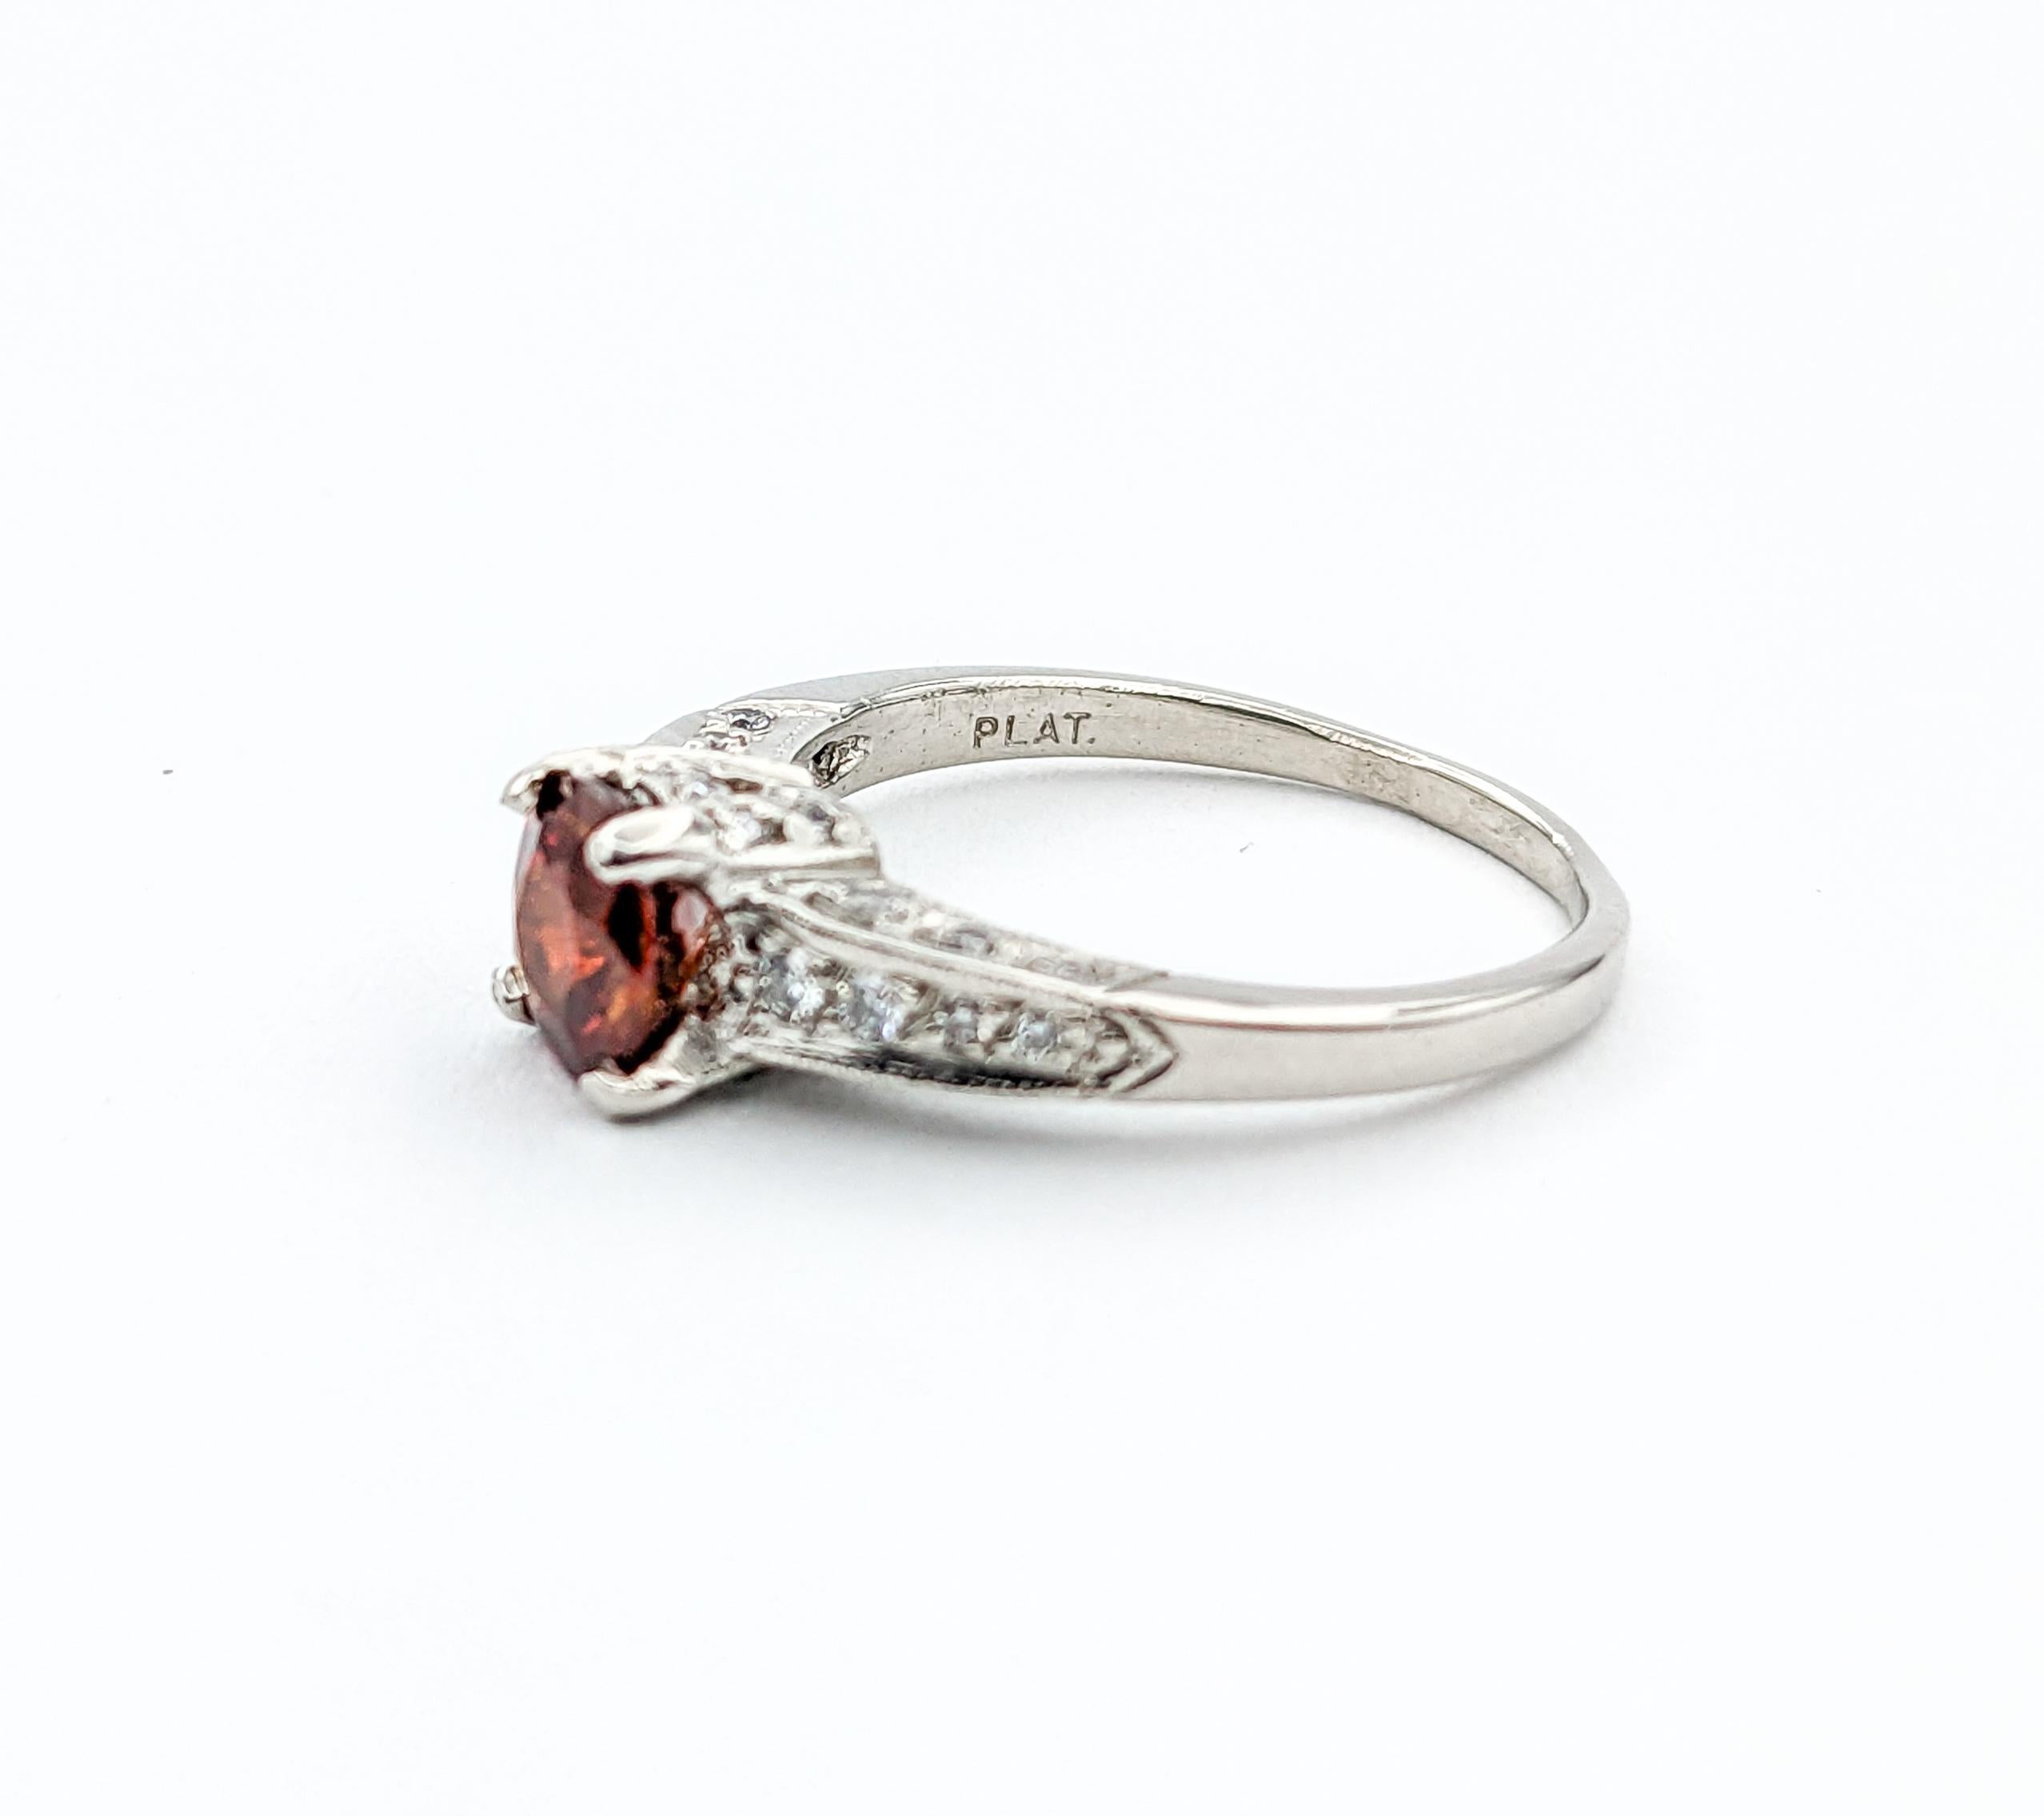 Designer Tacori 1.16ct Garnet & Diamond Ring In Platinum For Sale 2